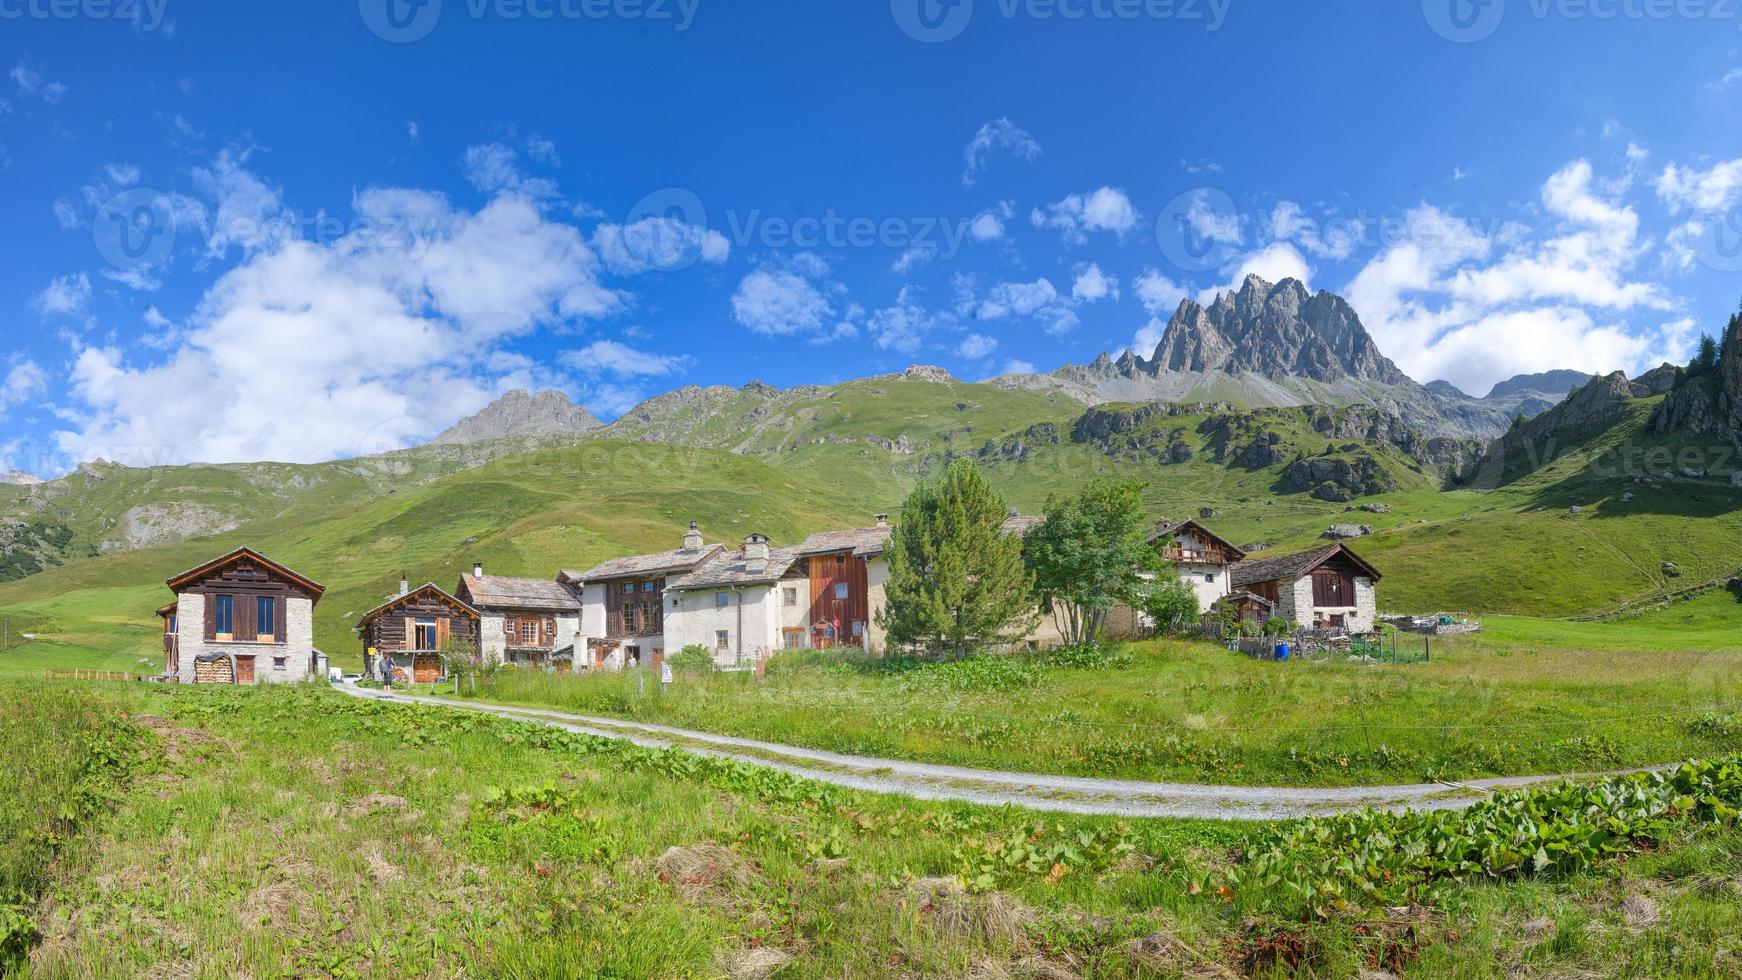 Grevasalvas connu sous le nom de village heidi sur les alpes suisses photo